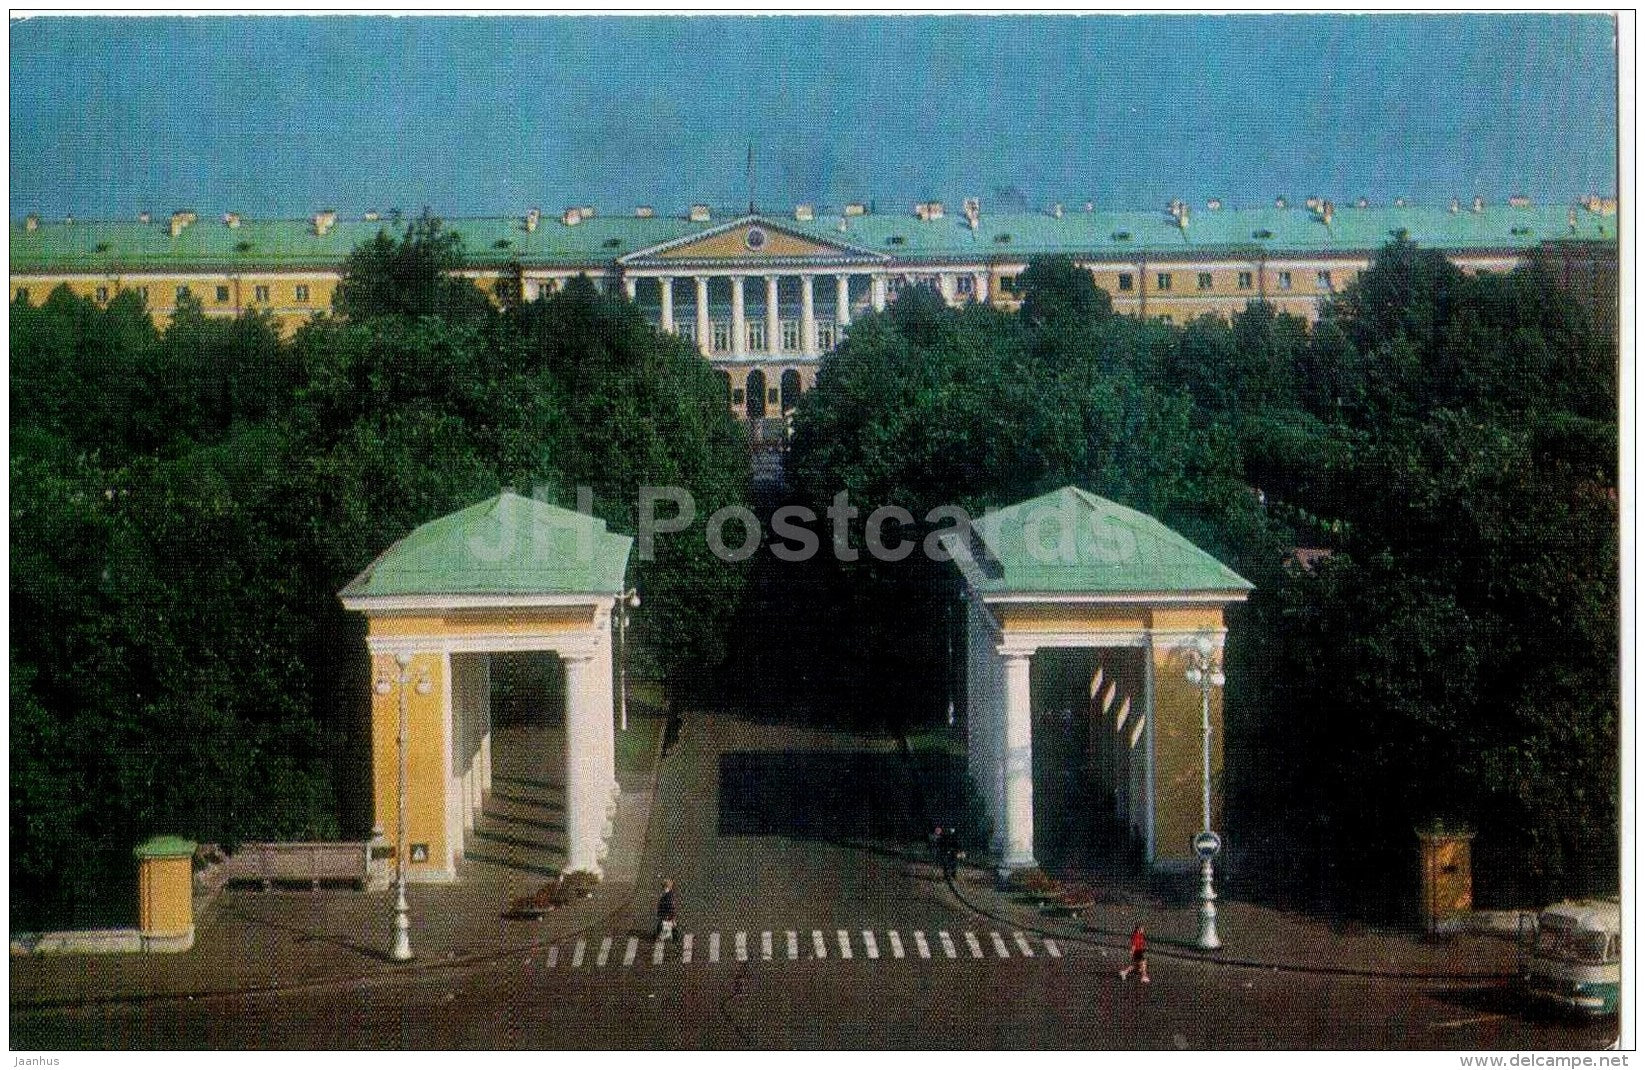 Smolny - Leningrad - St. Petersburg - 1975 - Russia USSR - unused - JH Postcards